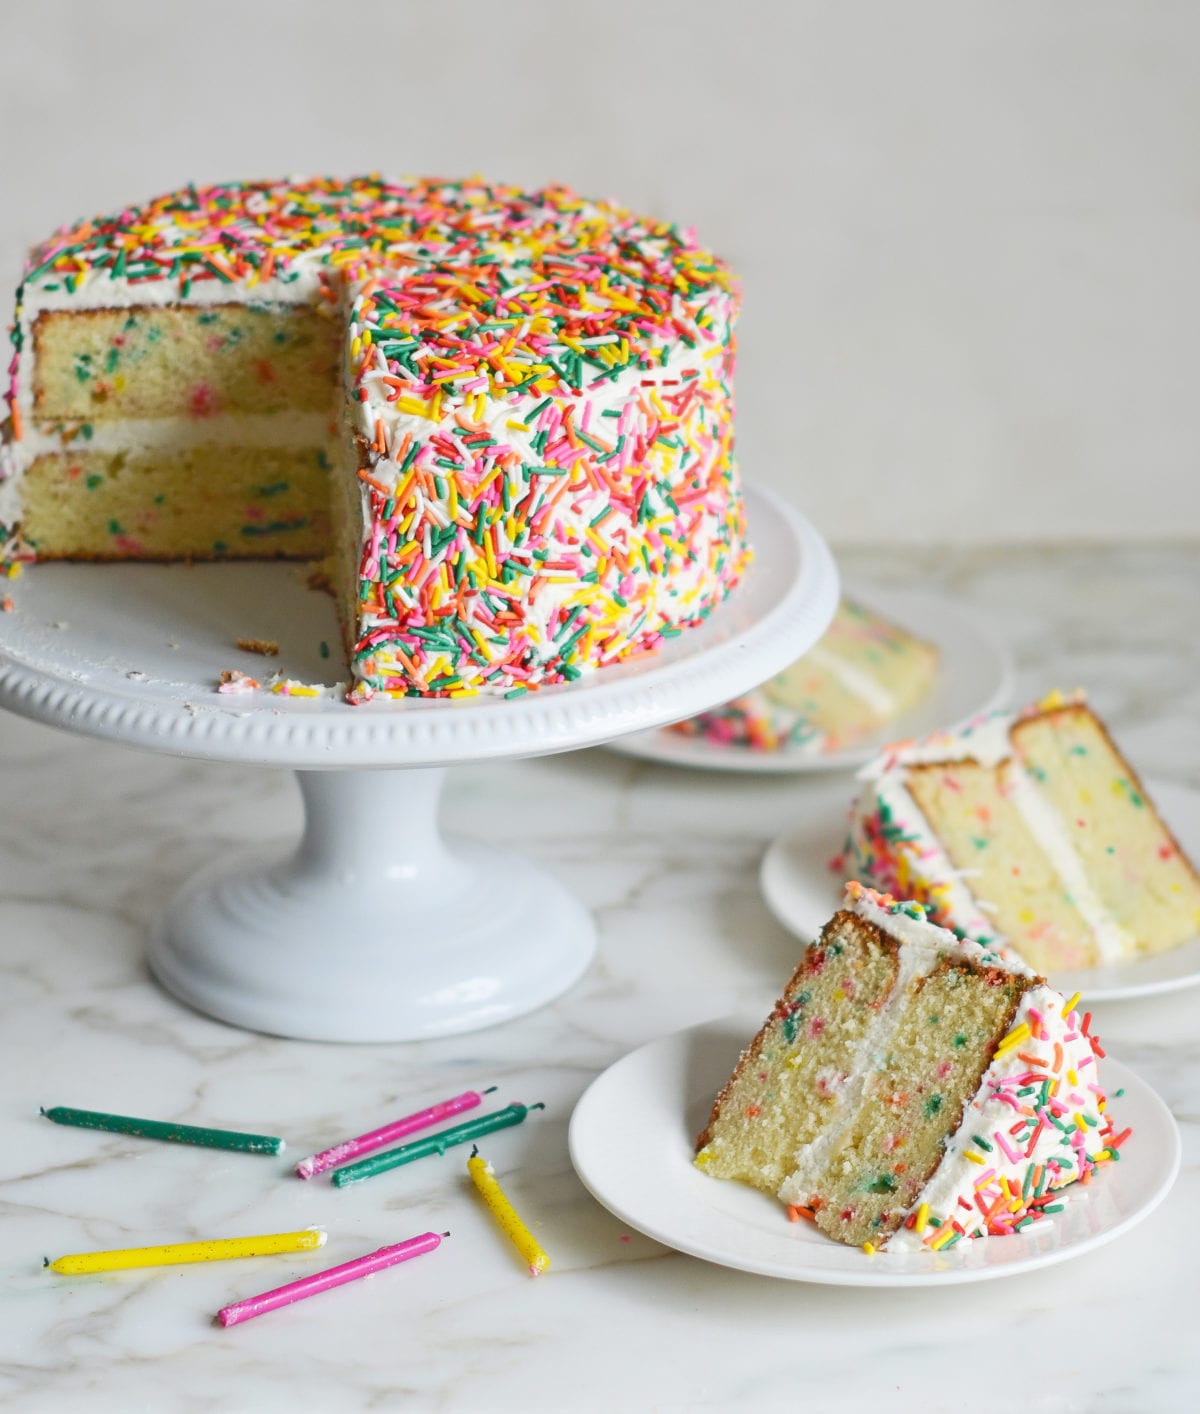 How to Make a Princess Birthday Cake - Veena Azmanov